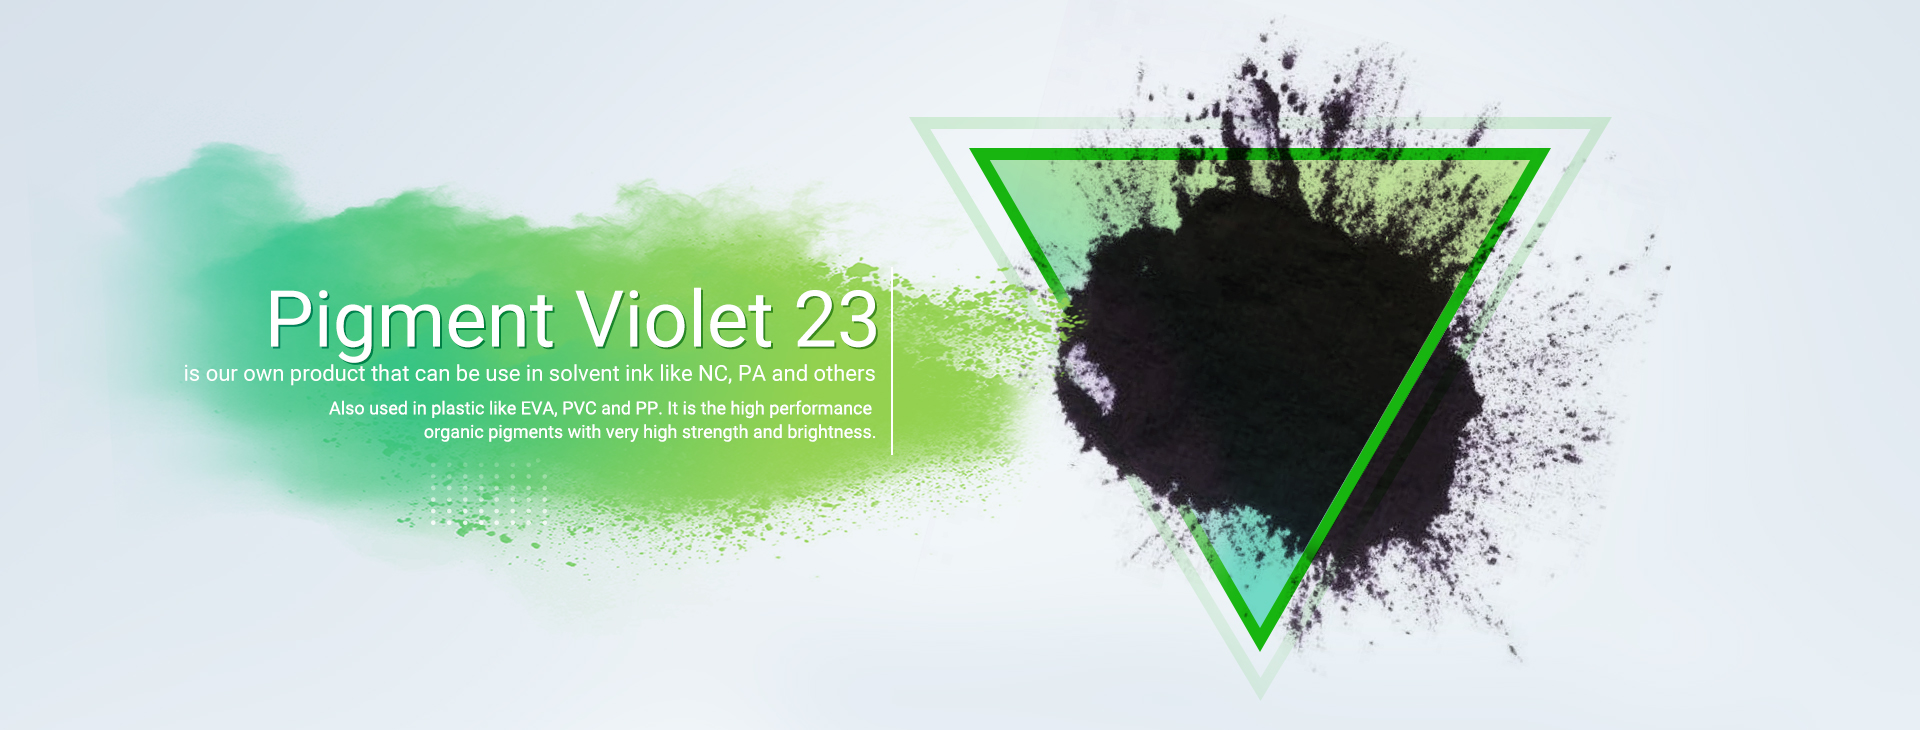 Эффективный краситель Solvent Black 27, широко используемый в промышленности пластмасс.